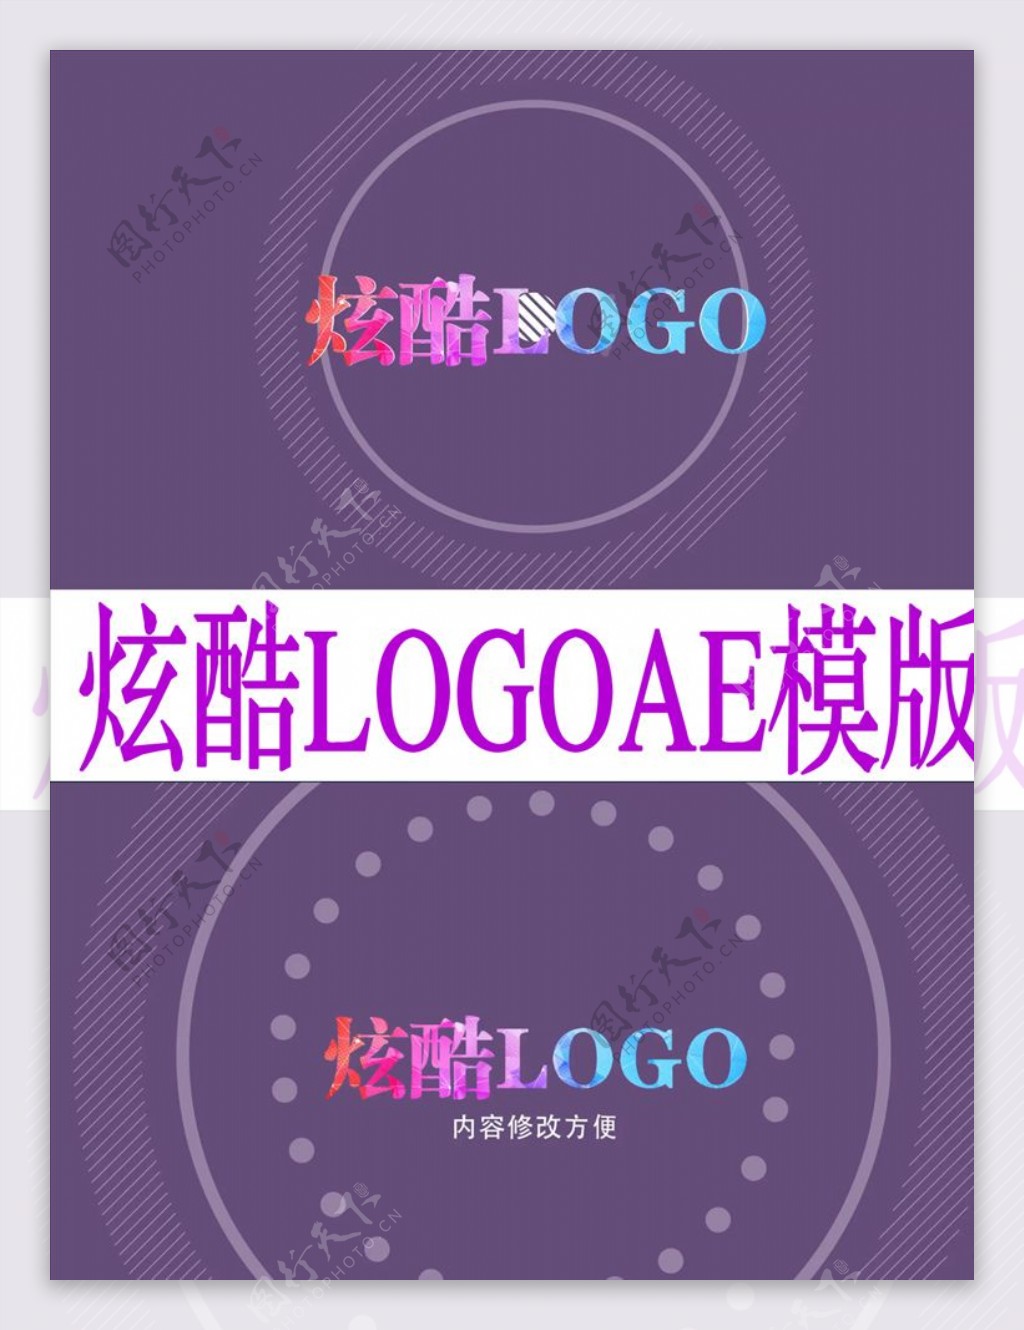 紫色炫酷LOGO片头AE模板